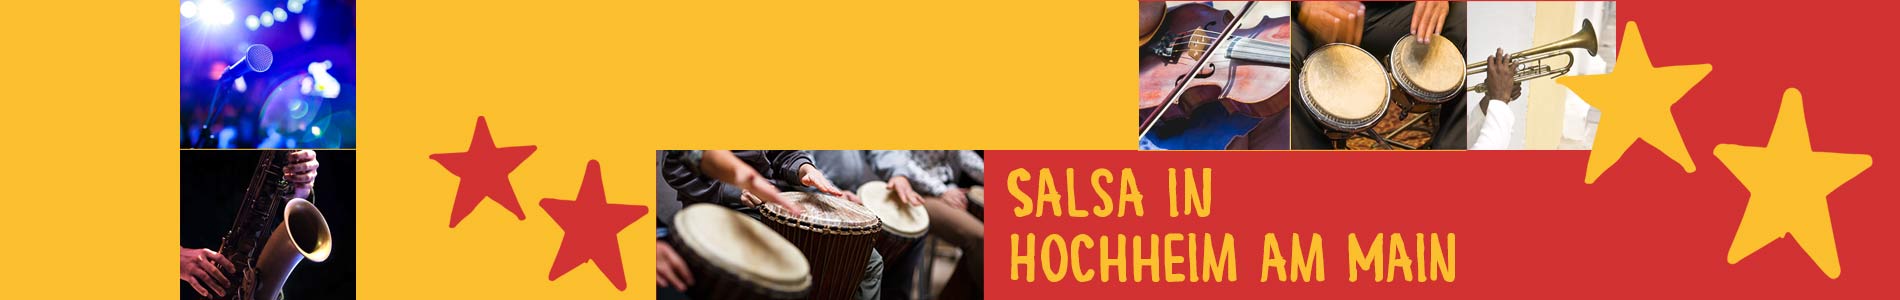 Salsa in Hochheim am Main – Salsa lernen und tanzen, Tanzkurse, Partys, Veranstaltungen